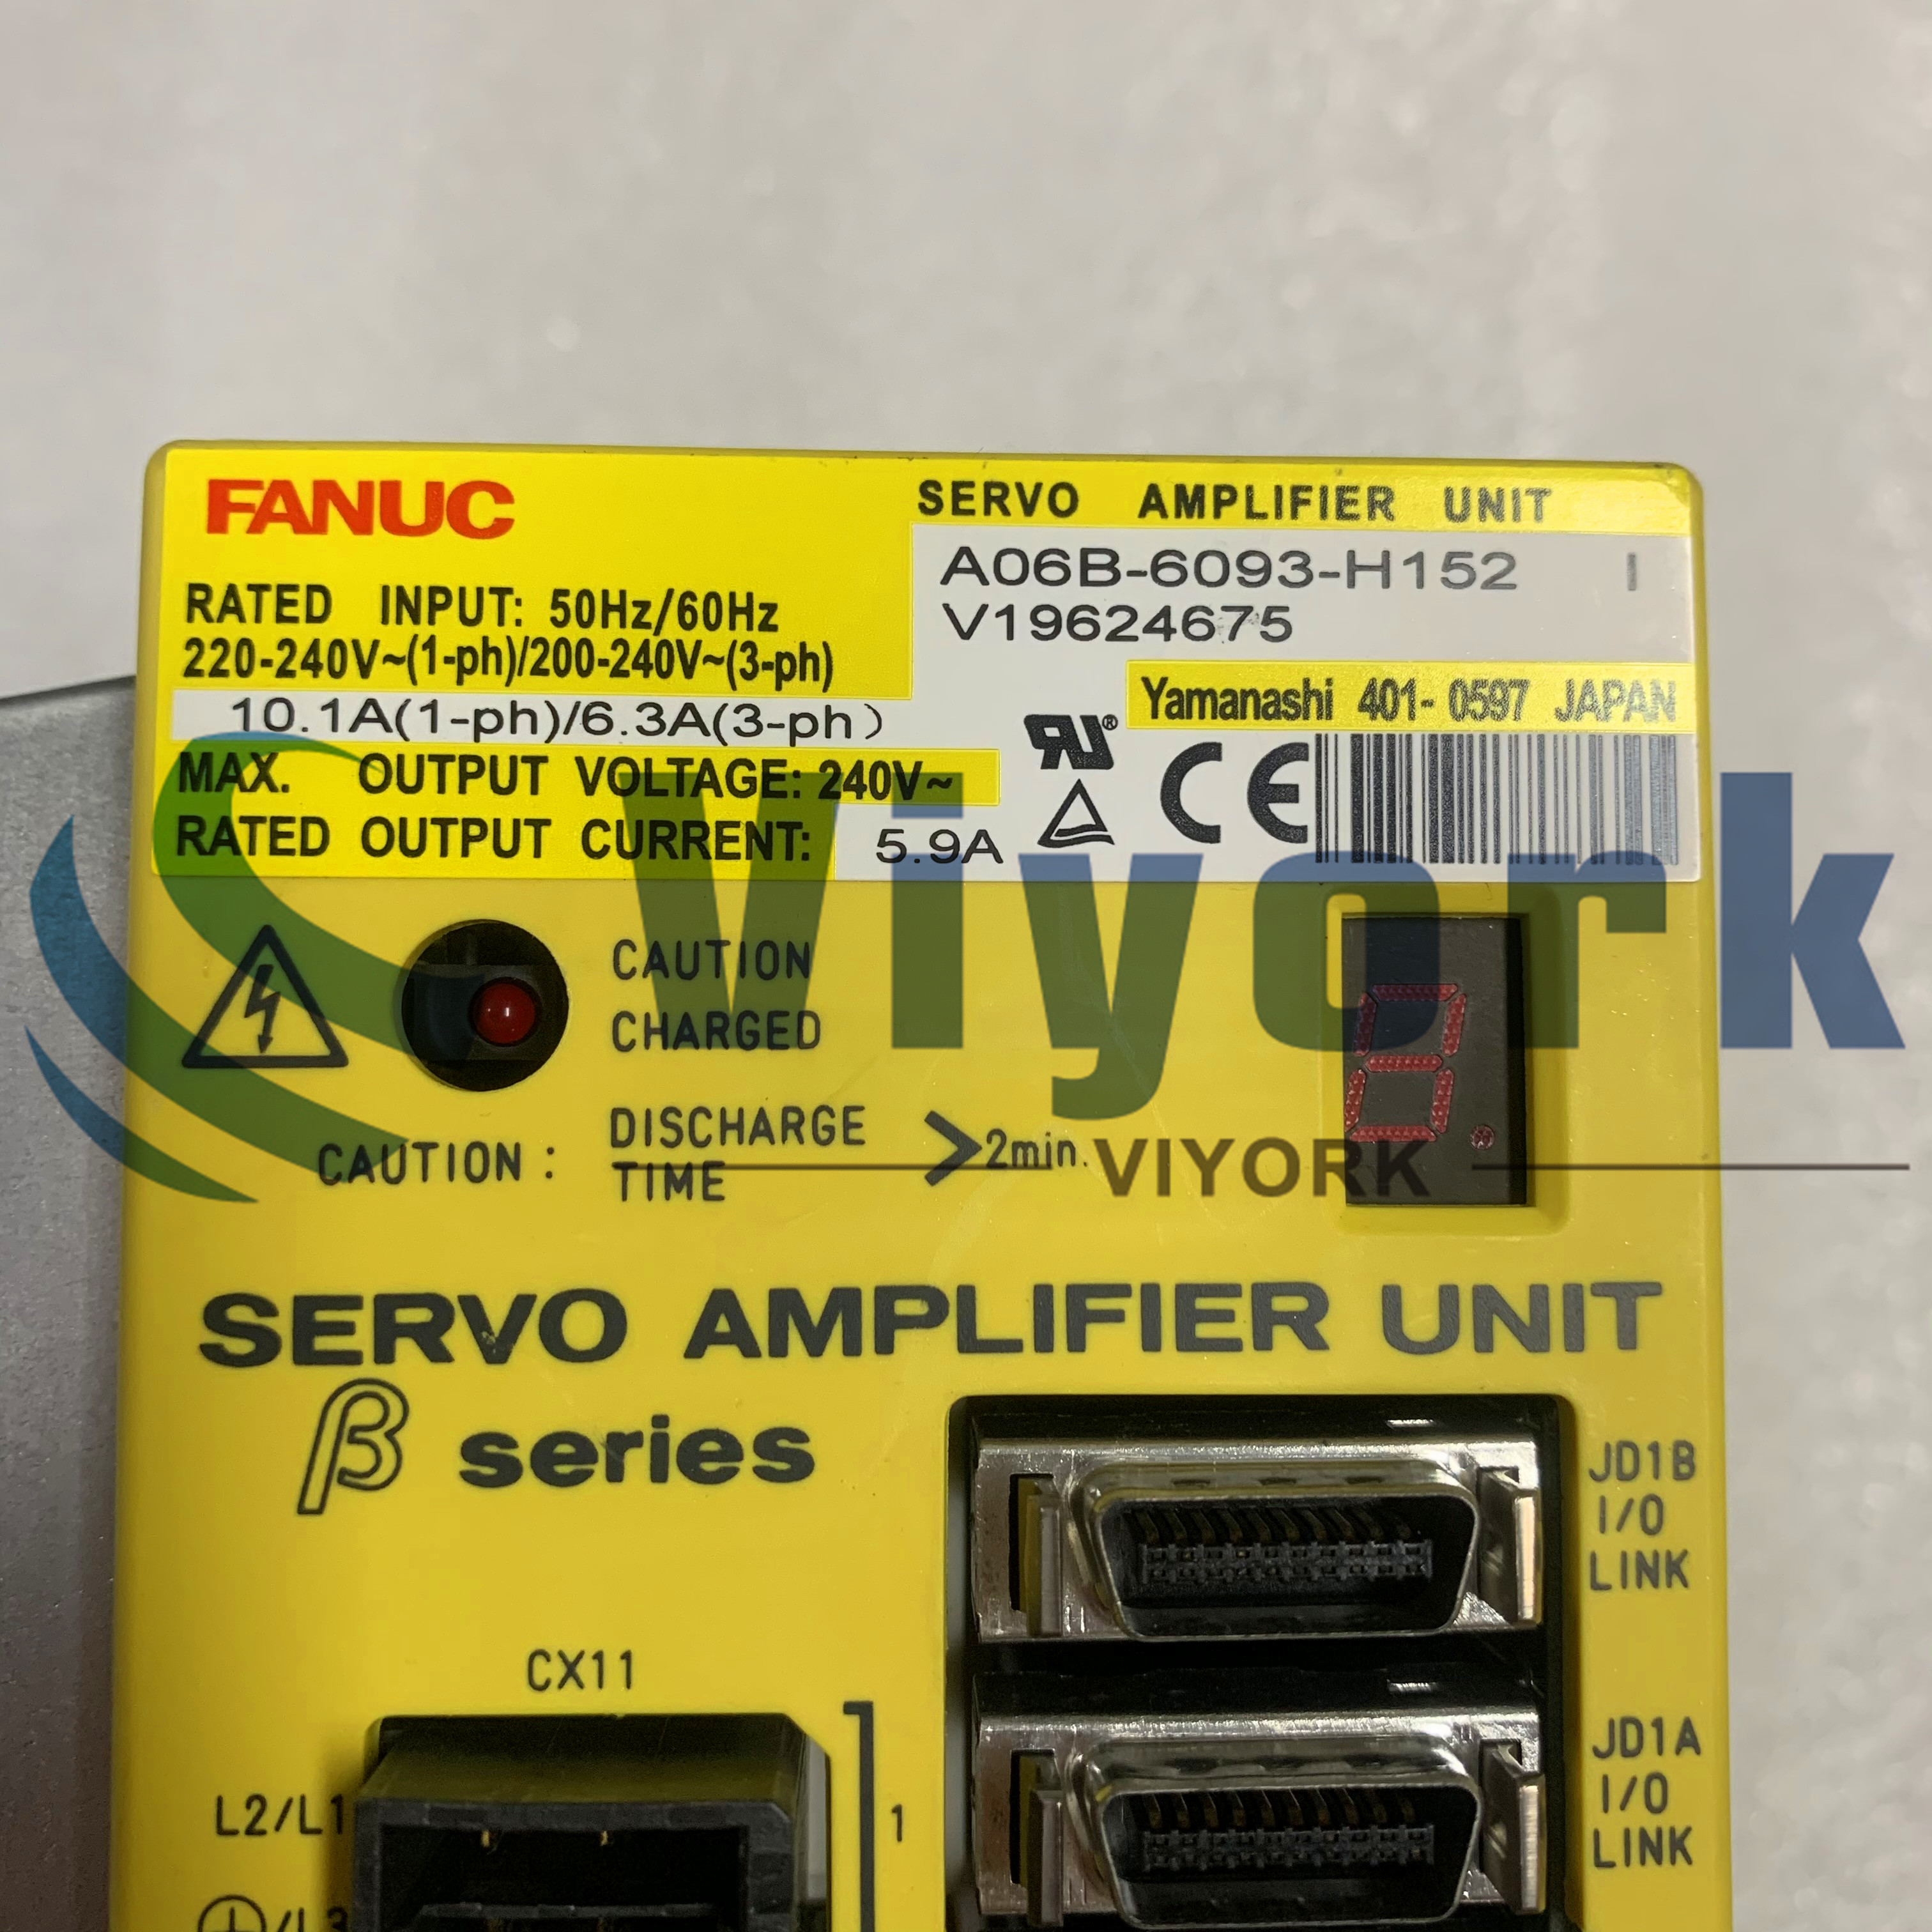 Fanuc A06B-6093-H152 SERVO AMPLIFIER UNIT SVU-12/SVU 1-12 BETA I/O-LINK CNC NEW